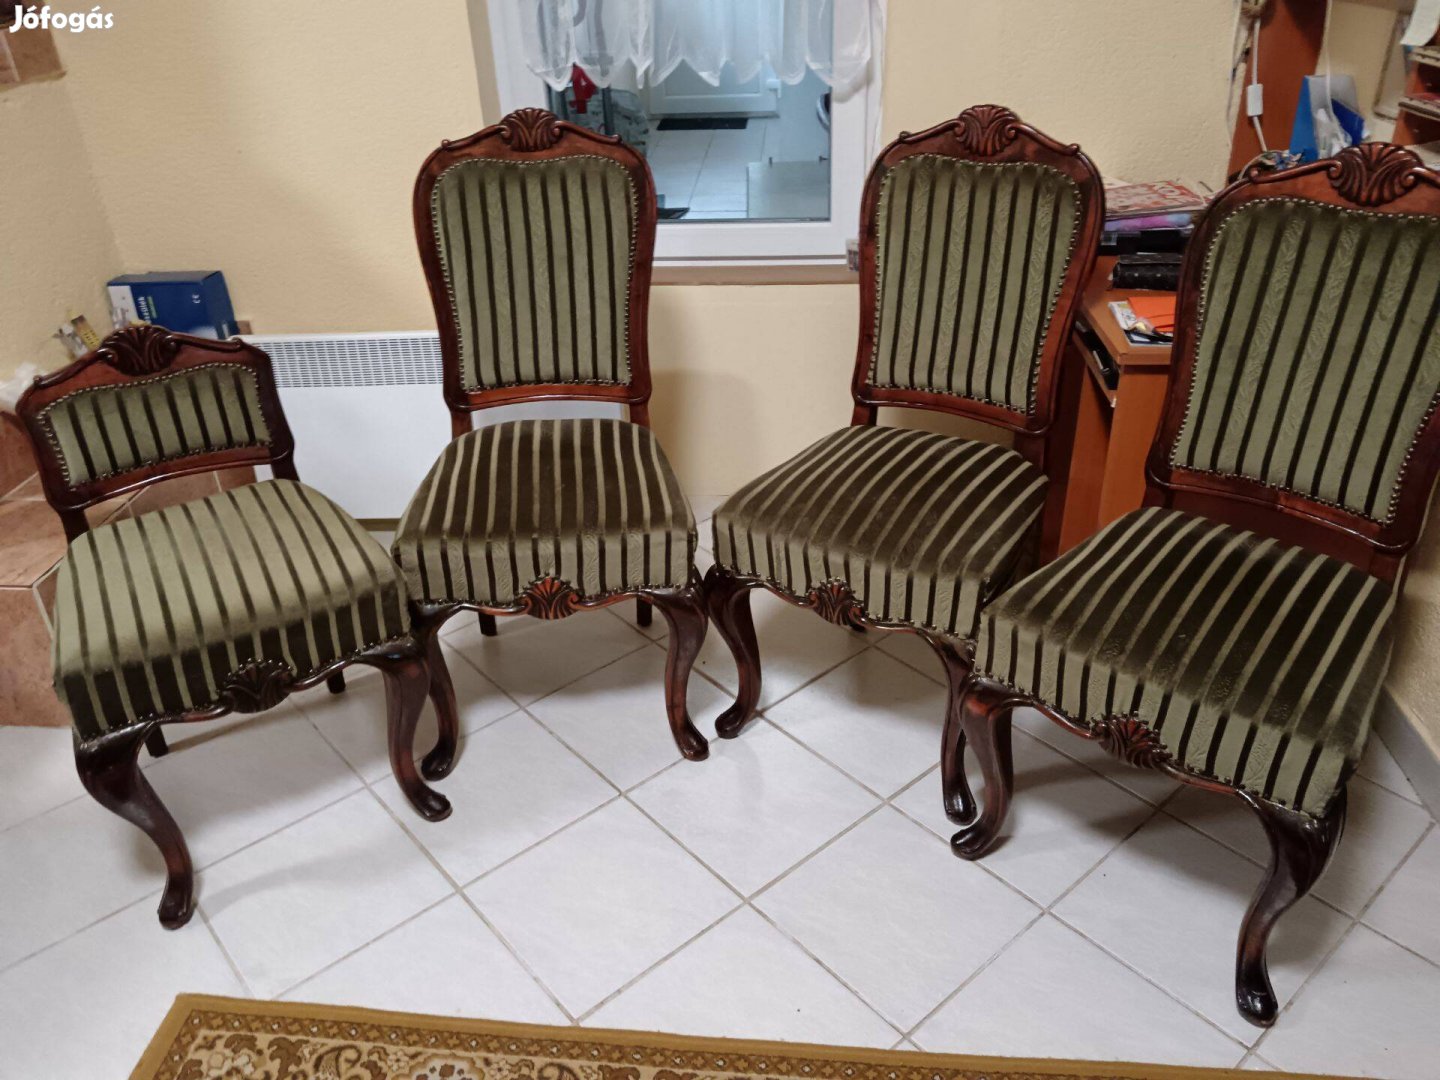 Eladó antik székek